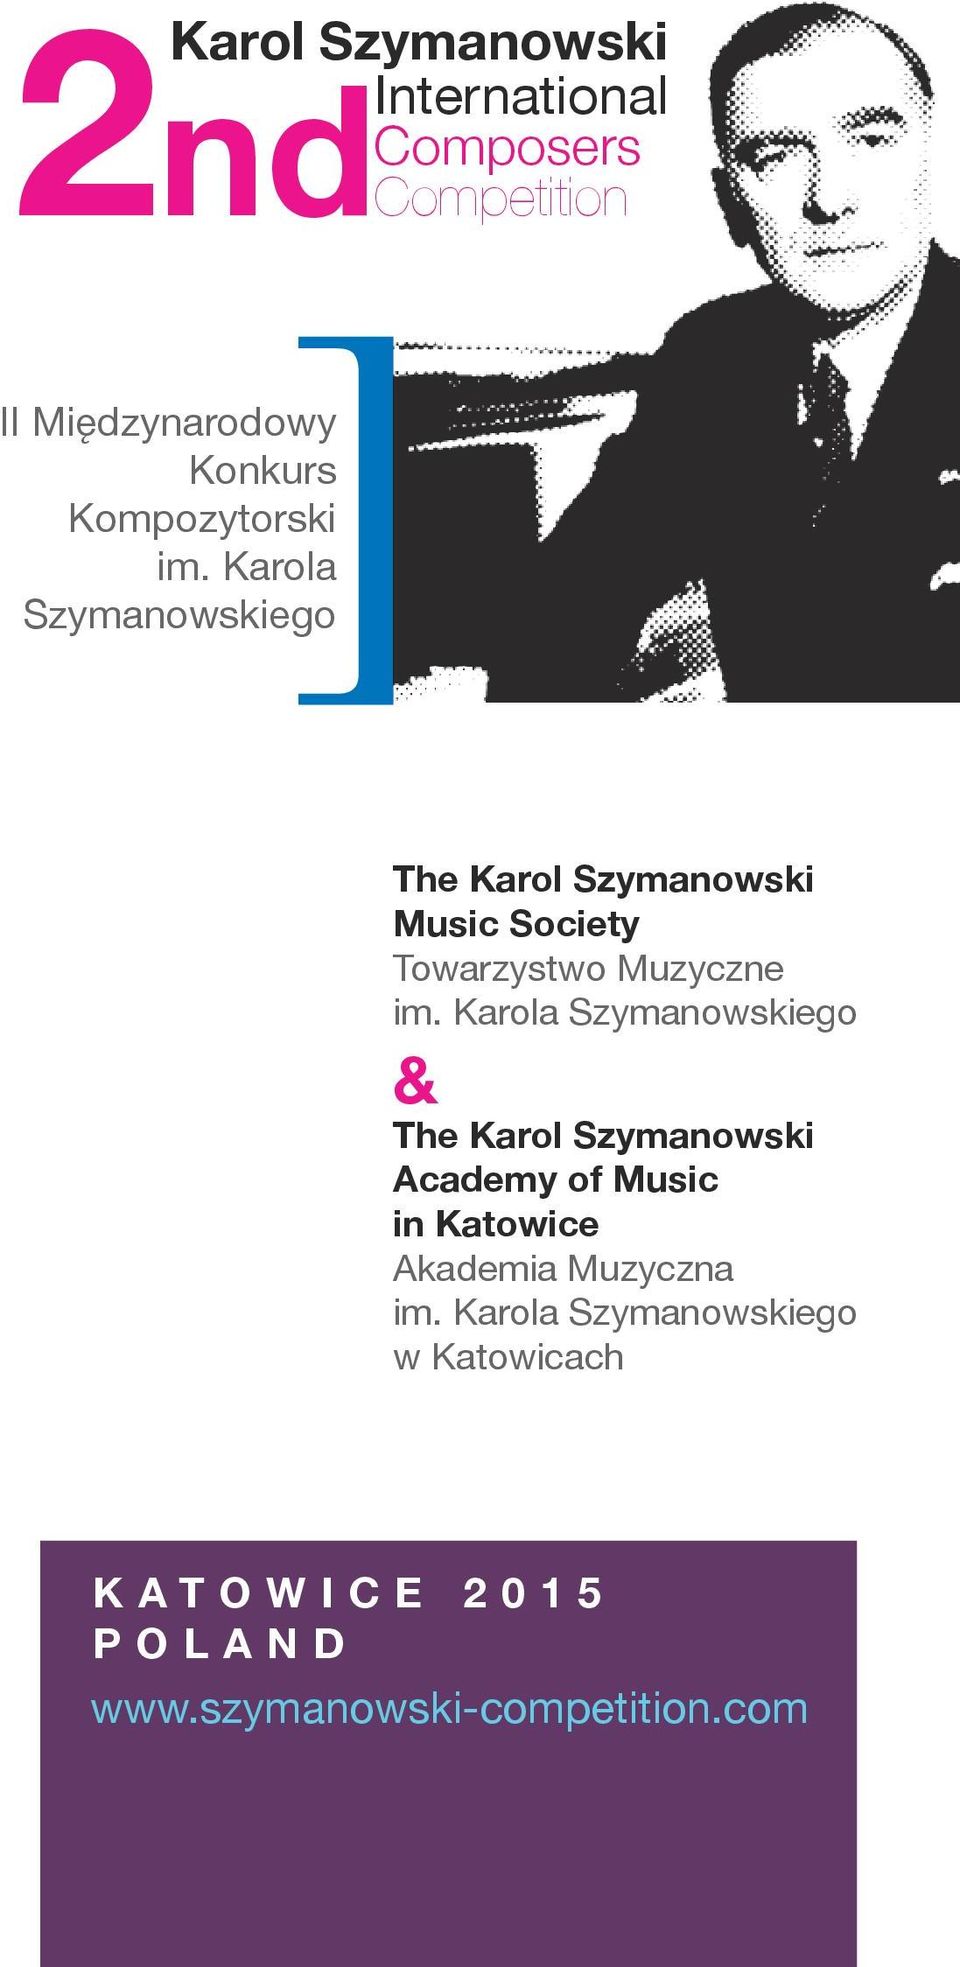 Karola Szymanowskiego The Karol Szymanowski Music Society Towarzystwo Muzyczne